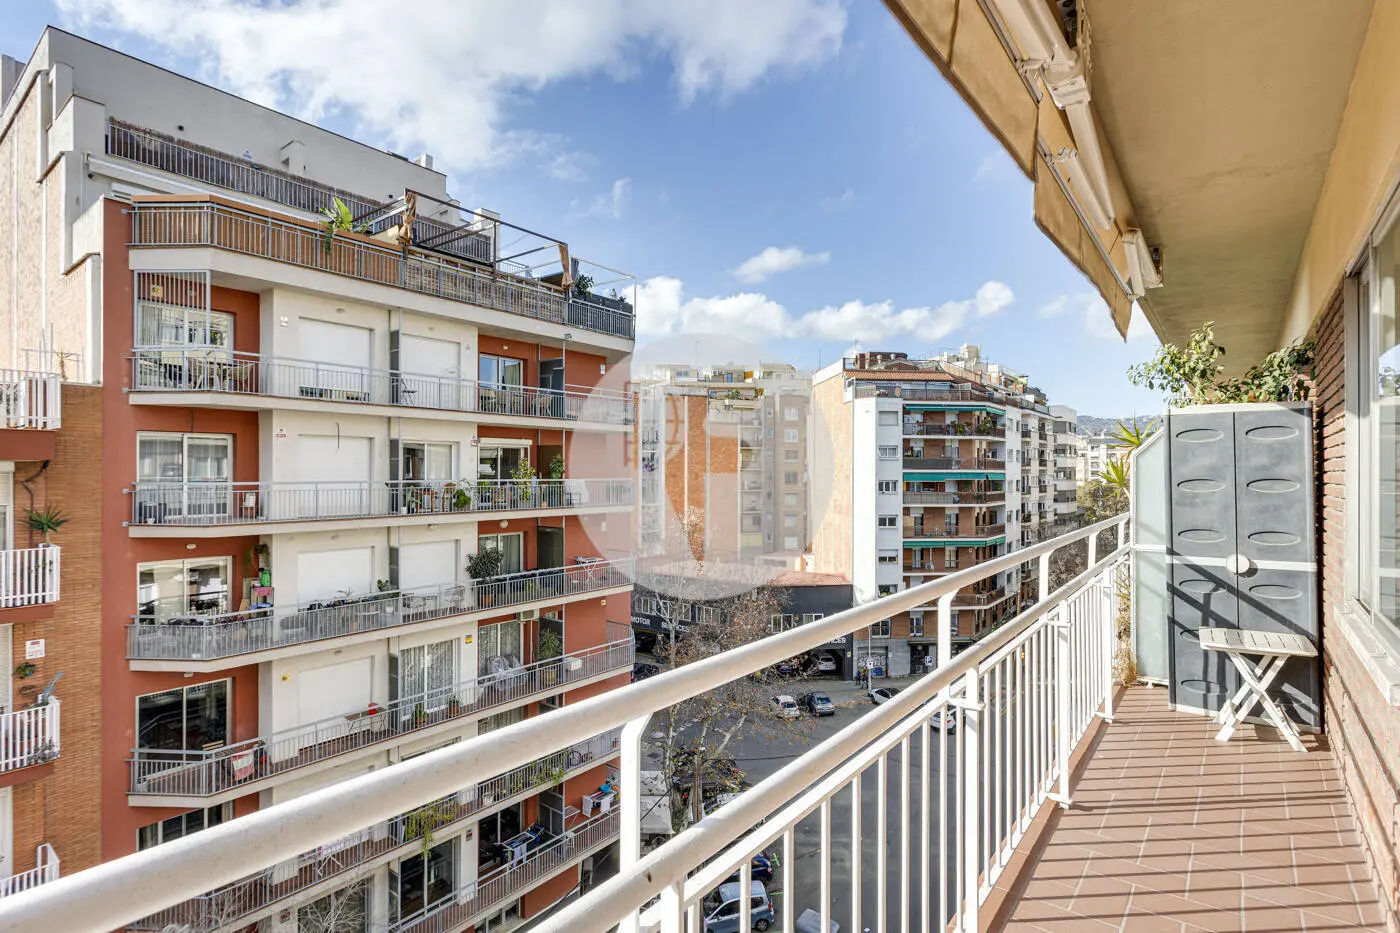 Piso de 3 habitaciones ubicado en el barrio de la Nova Esquerra de l'Eixample de Barcelona. 6